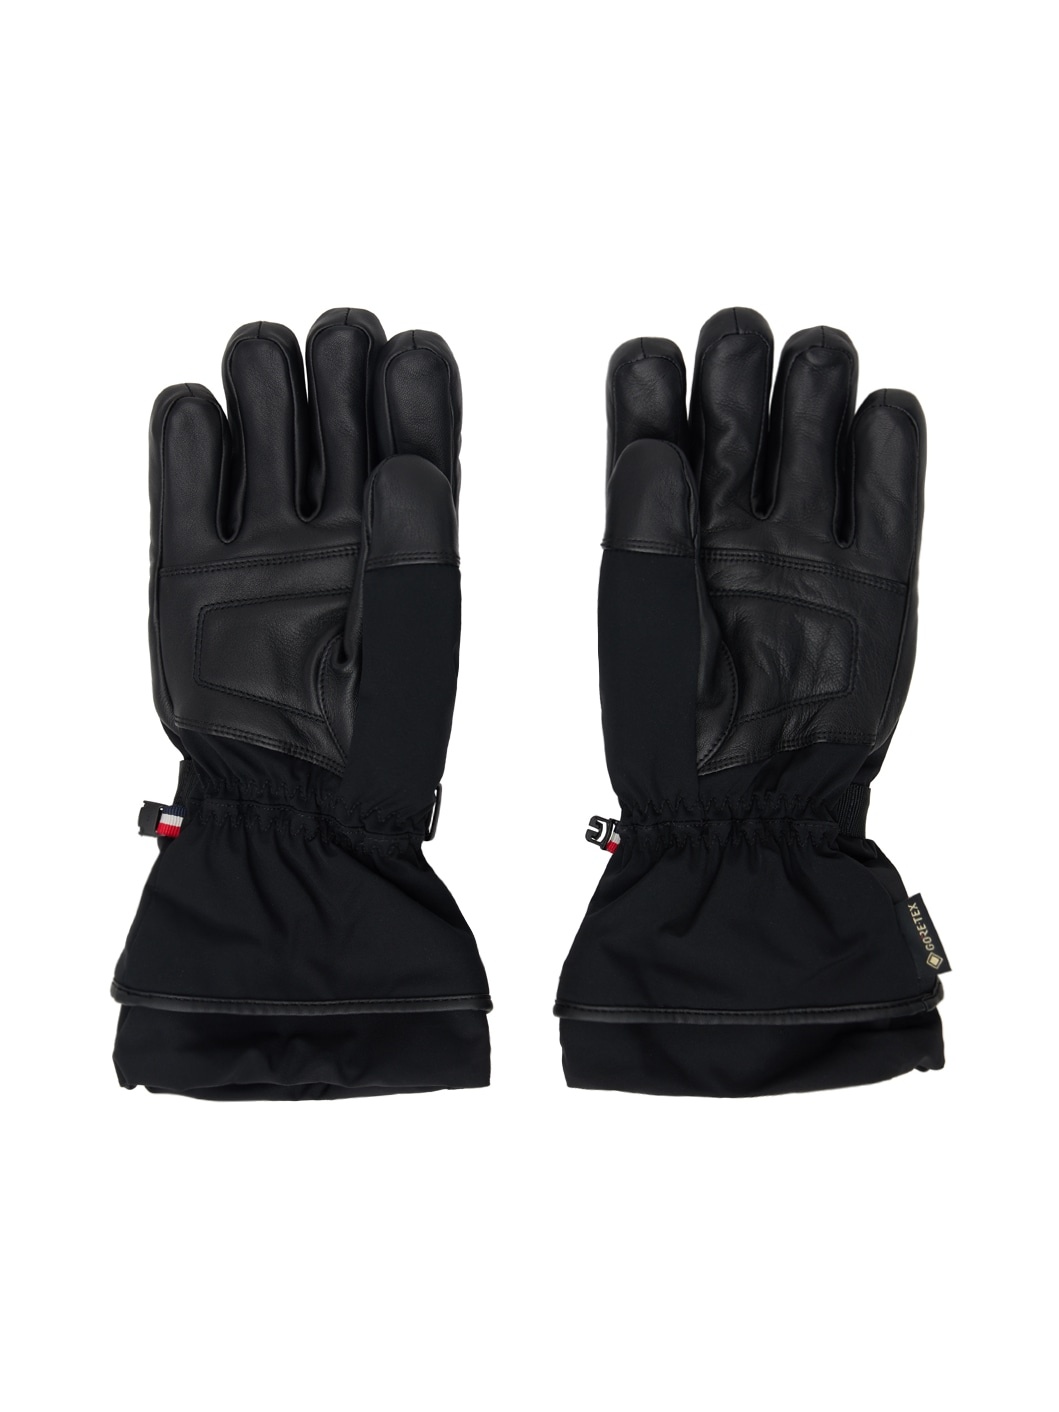 Black Padded Gloves - 2